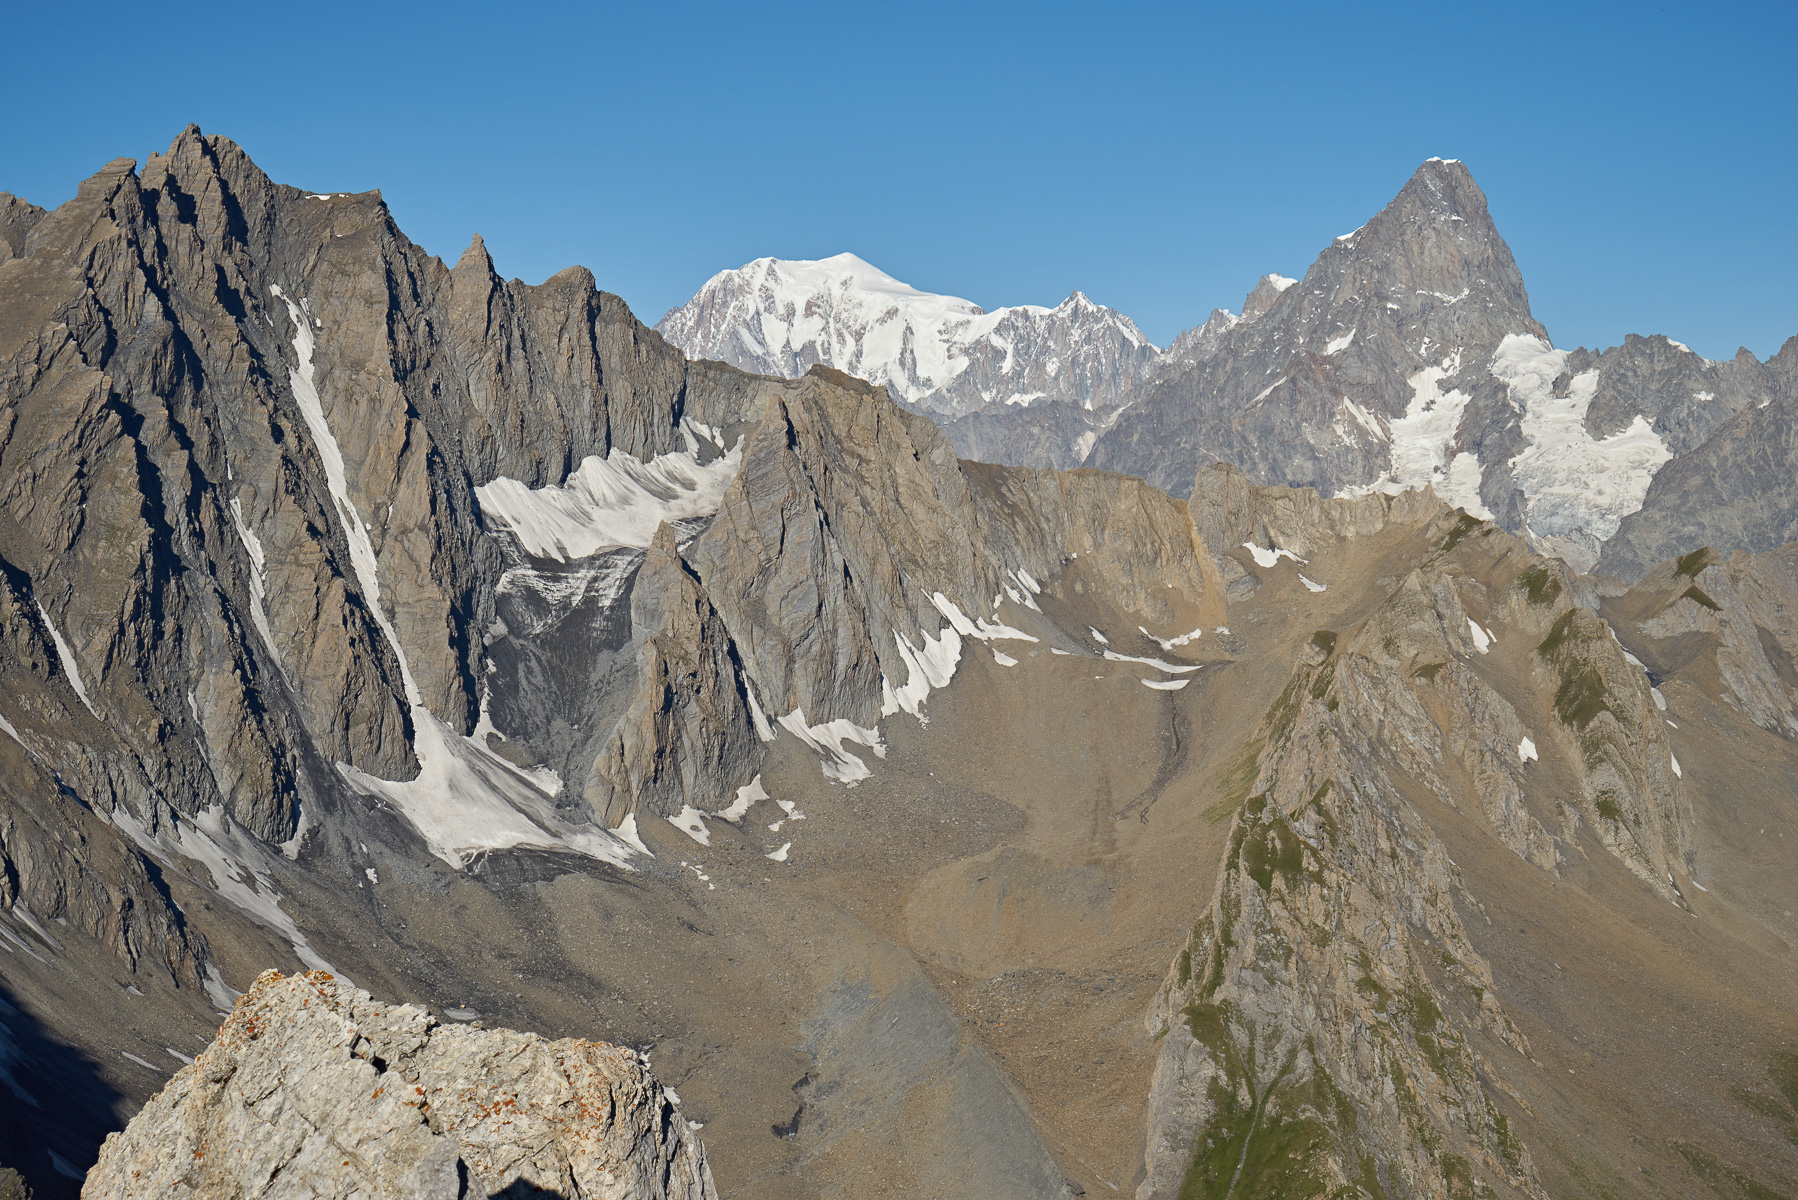 Welch ungewohnter Anblick: Hinter dem massigen Grand Golliat erheben sich Mont Blanc und Grandes Jorasses direkt nebeneinander.